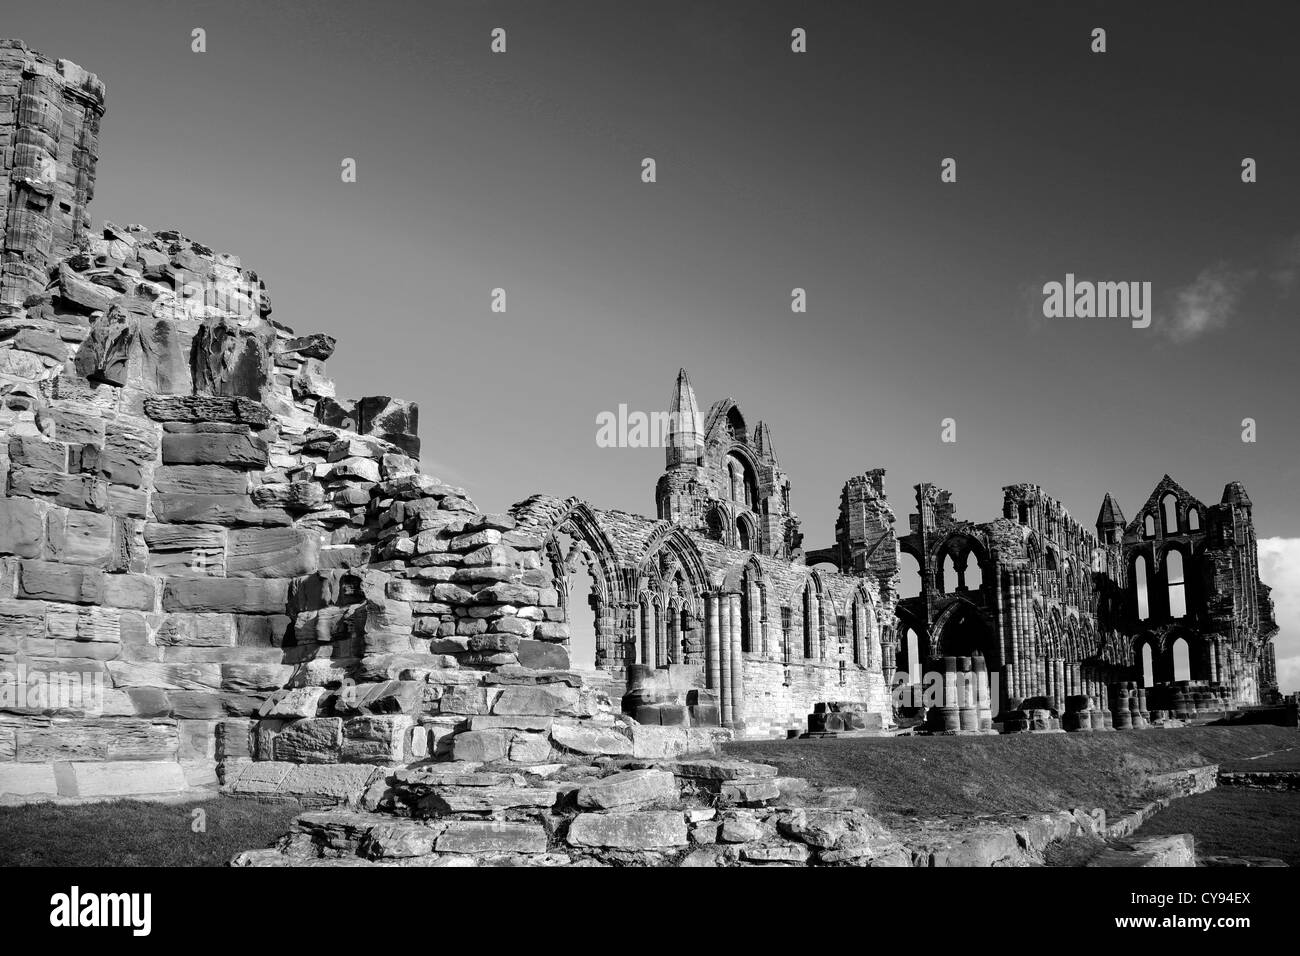 Schwarz und weiß Bild Sommer Blick auf die Ruinen von Whitby Abbey Priory, Whitby Stadt, North Yorkshire County, England, UK Stockfoto